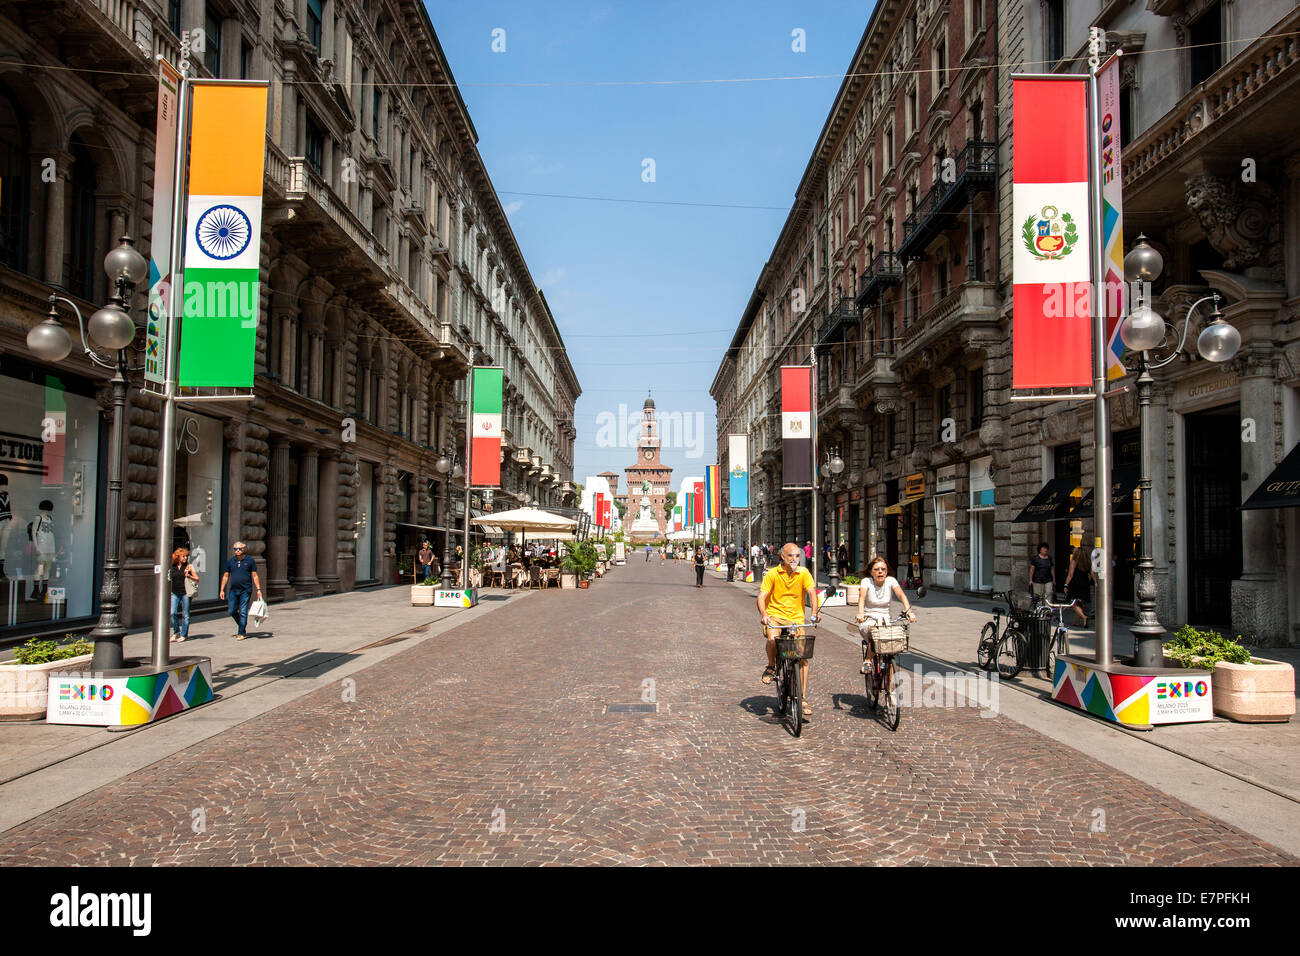 Milano, Milán, la Expo 2015, viajes, justo , Universal, exposición, el castillo Sforzesco, ciudad, pueblo, GATE, Infopoint, Foto de stock